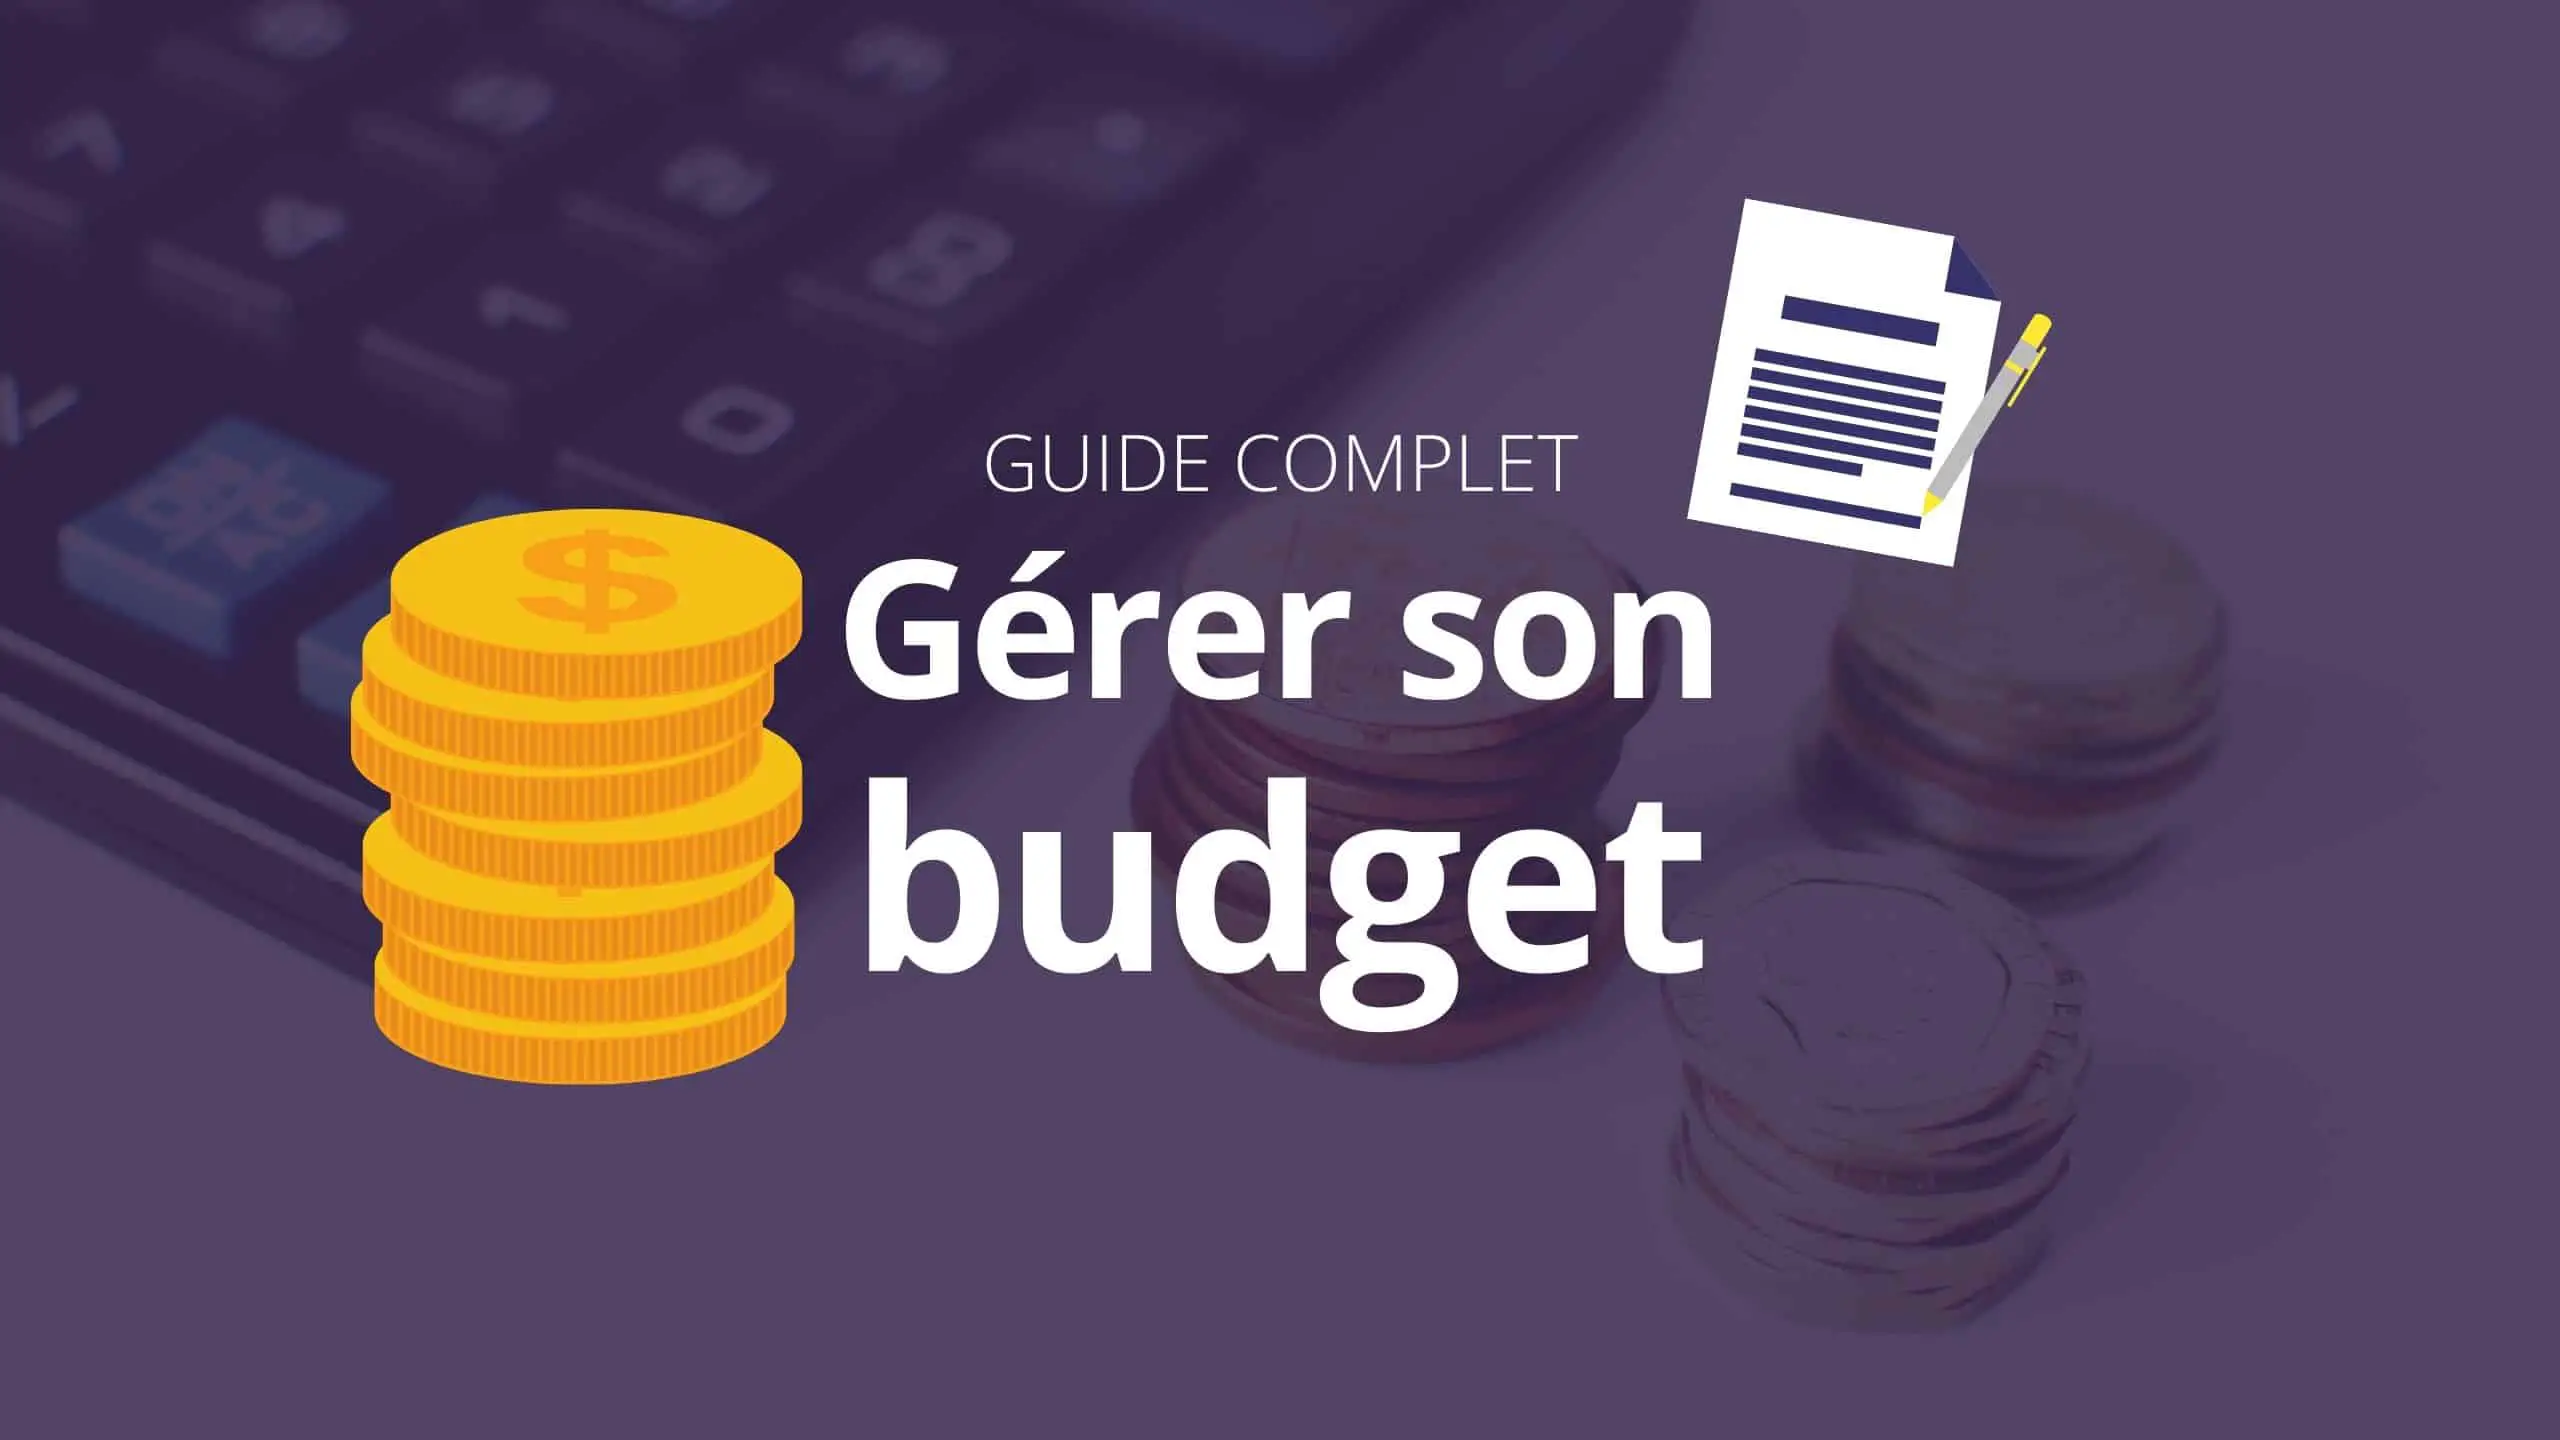 Guide pour gérer son budget et son argent